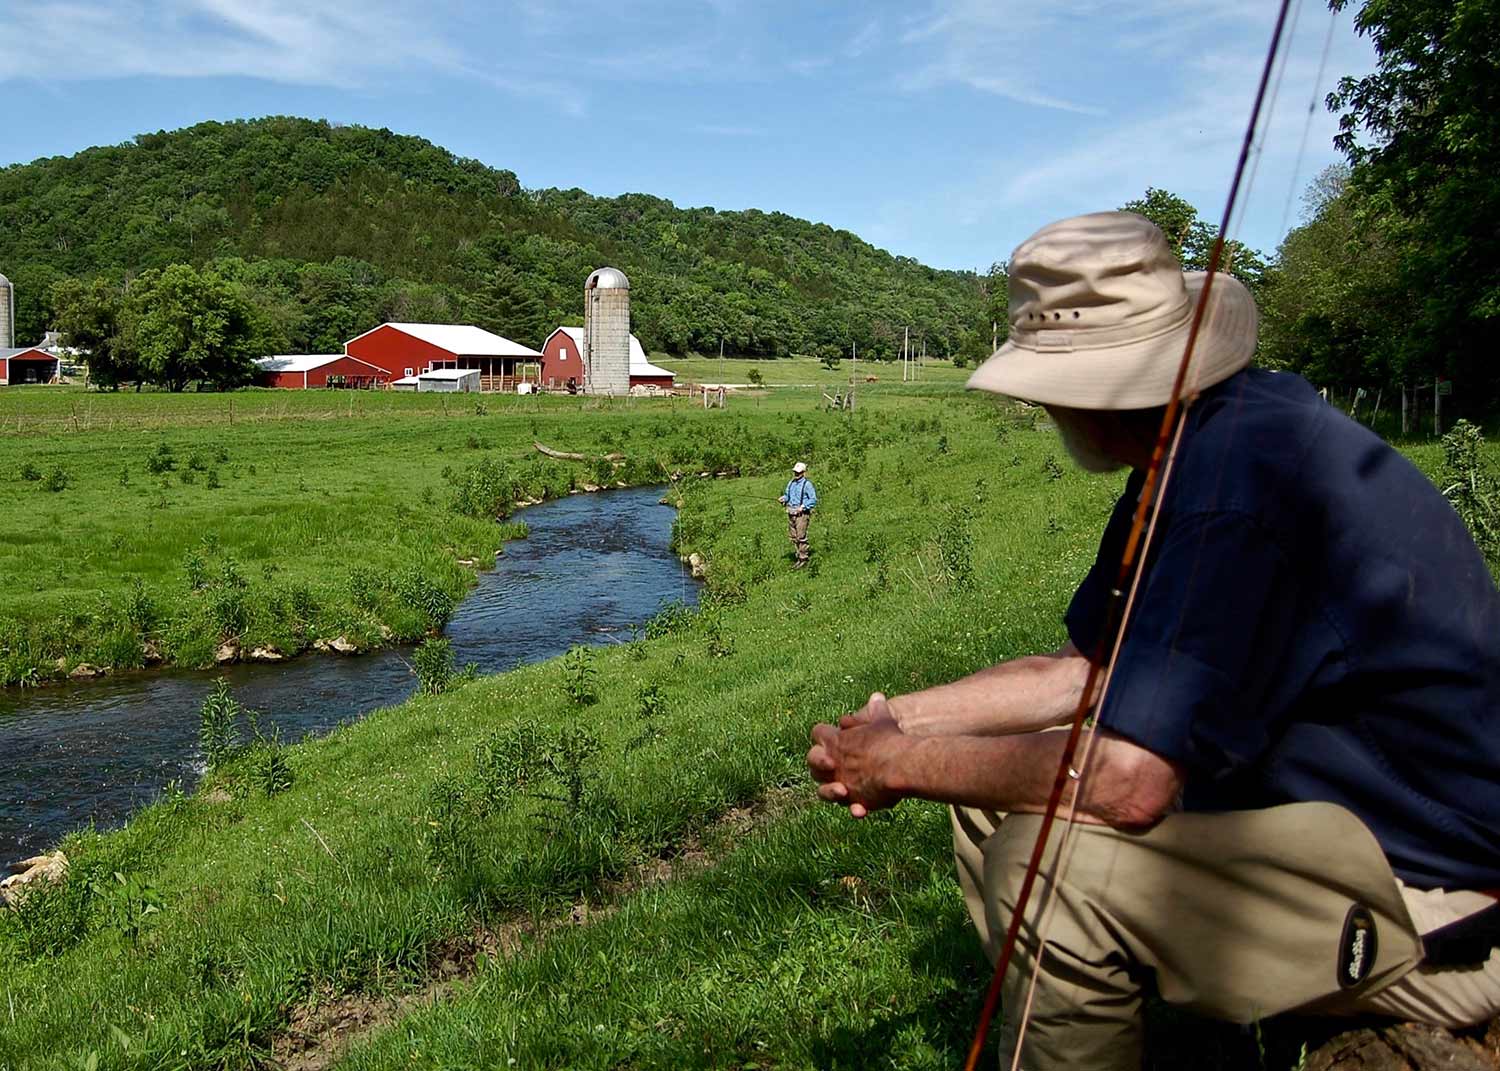 man fishing on creek near farmland